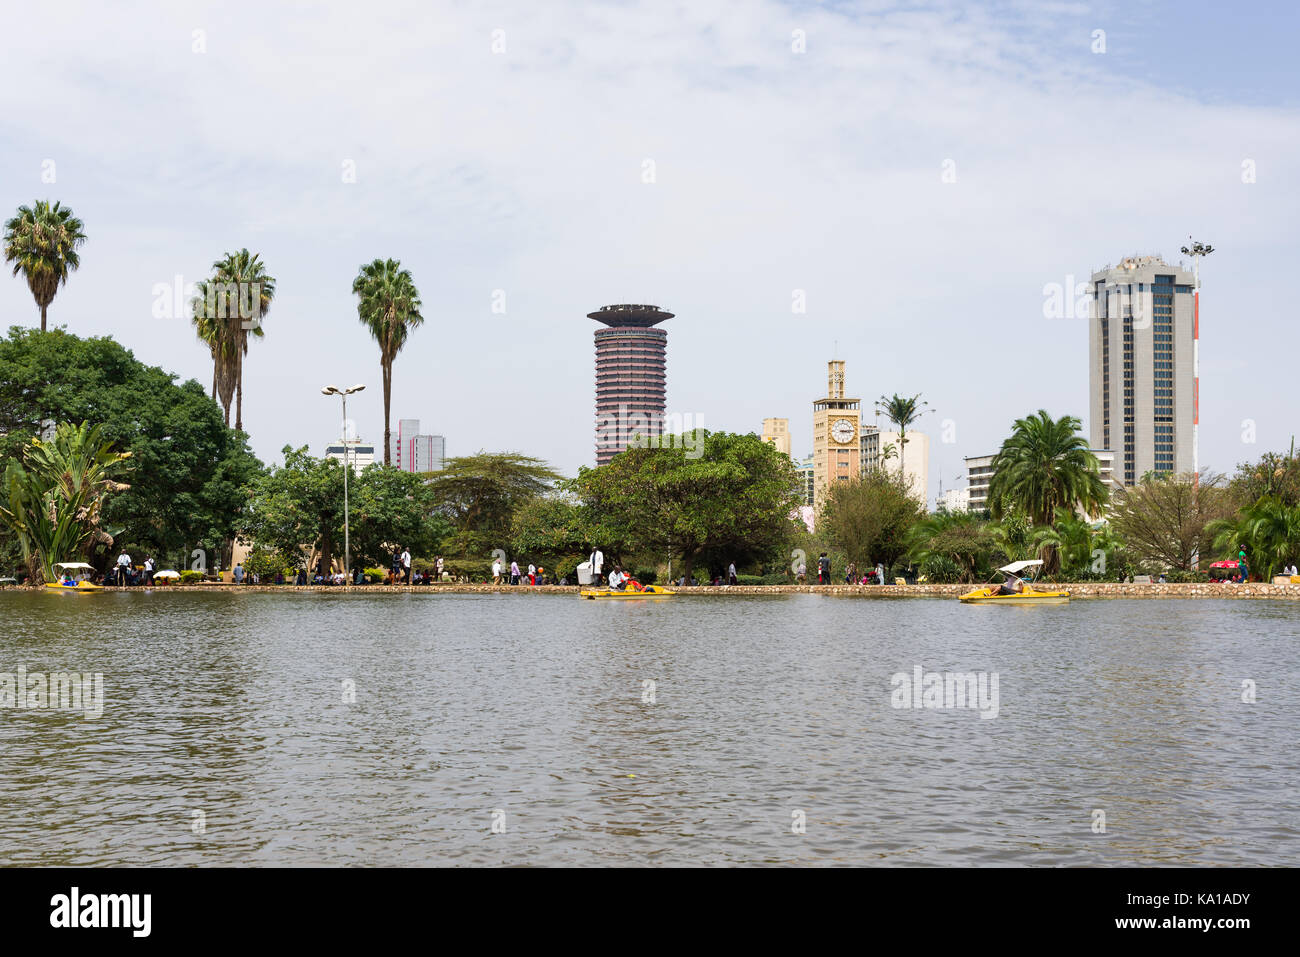 Les personnes bénéficiant de colporter des promenades en bateau sur le lac avec le Centre de conférences International Kenyatta en arrière-plan, Uhuru Park, Nairobi, Kenya, Afrique de l'Est Banque D'Images